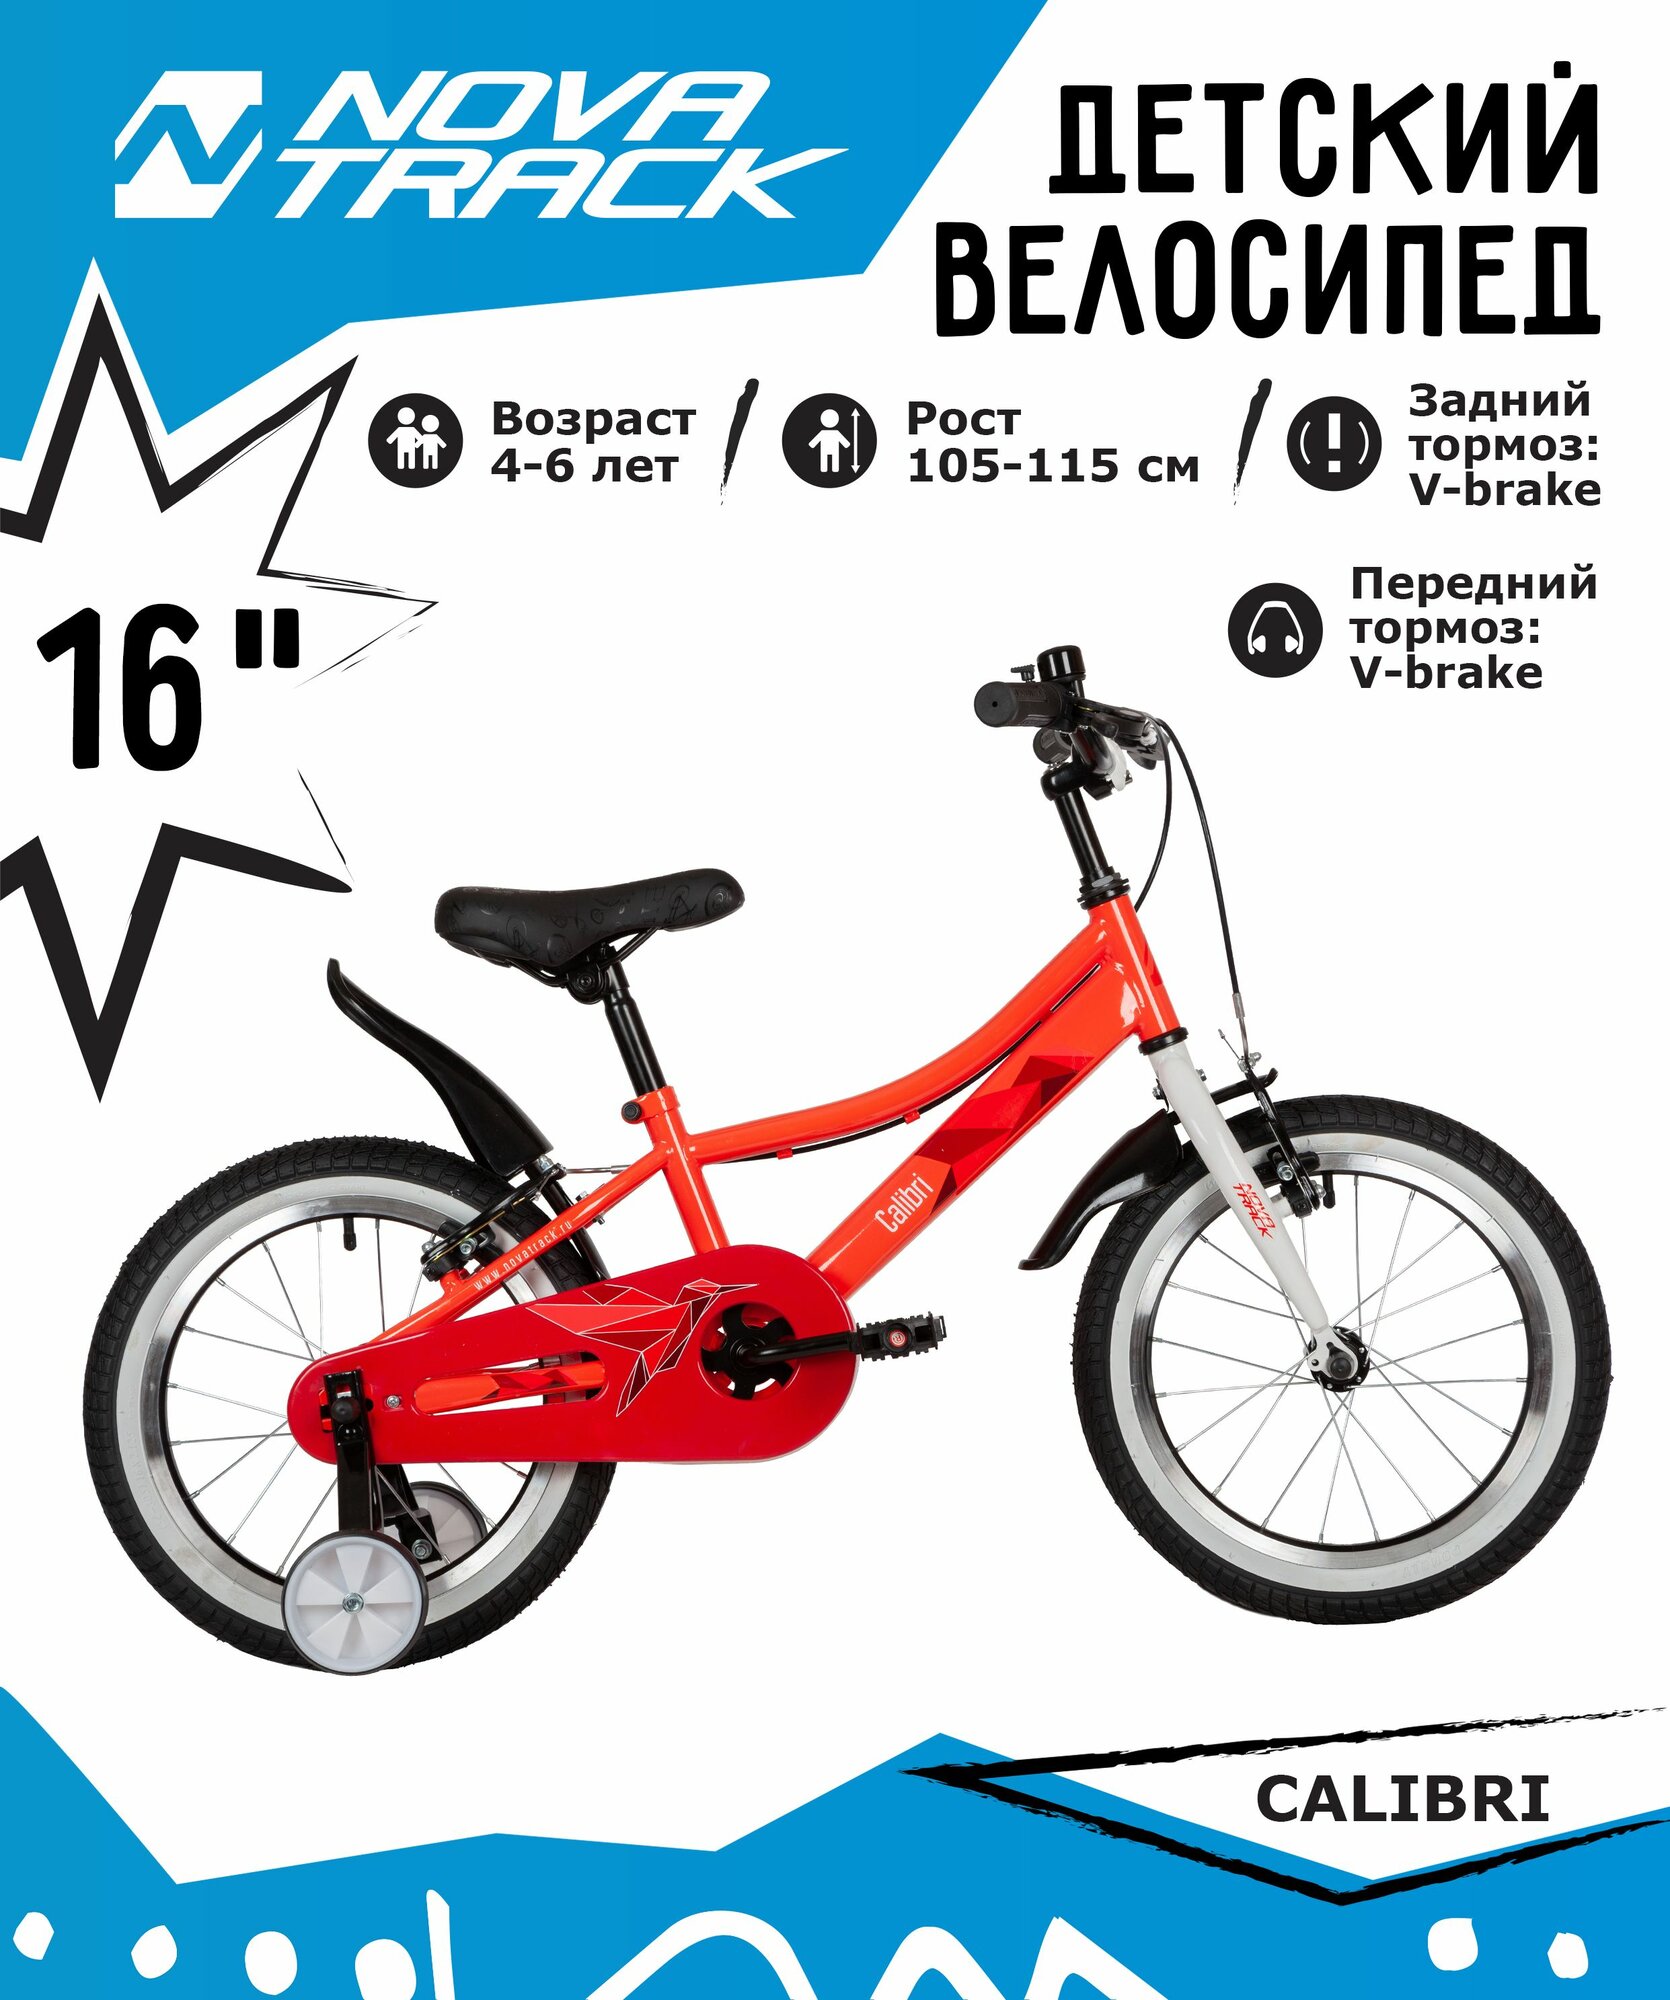 Велосипед NOVATRACK 16" CALIBRI сталь, коралловый, тормоз V-brake, полная защита цепи, короткие крылья